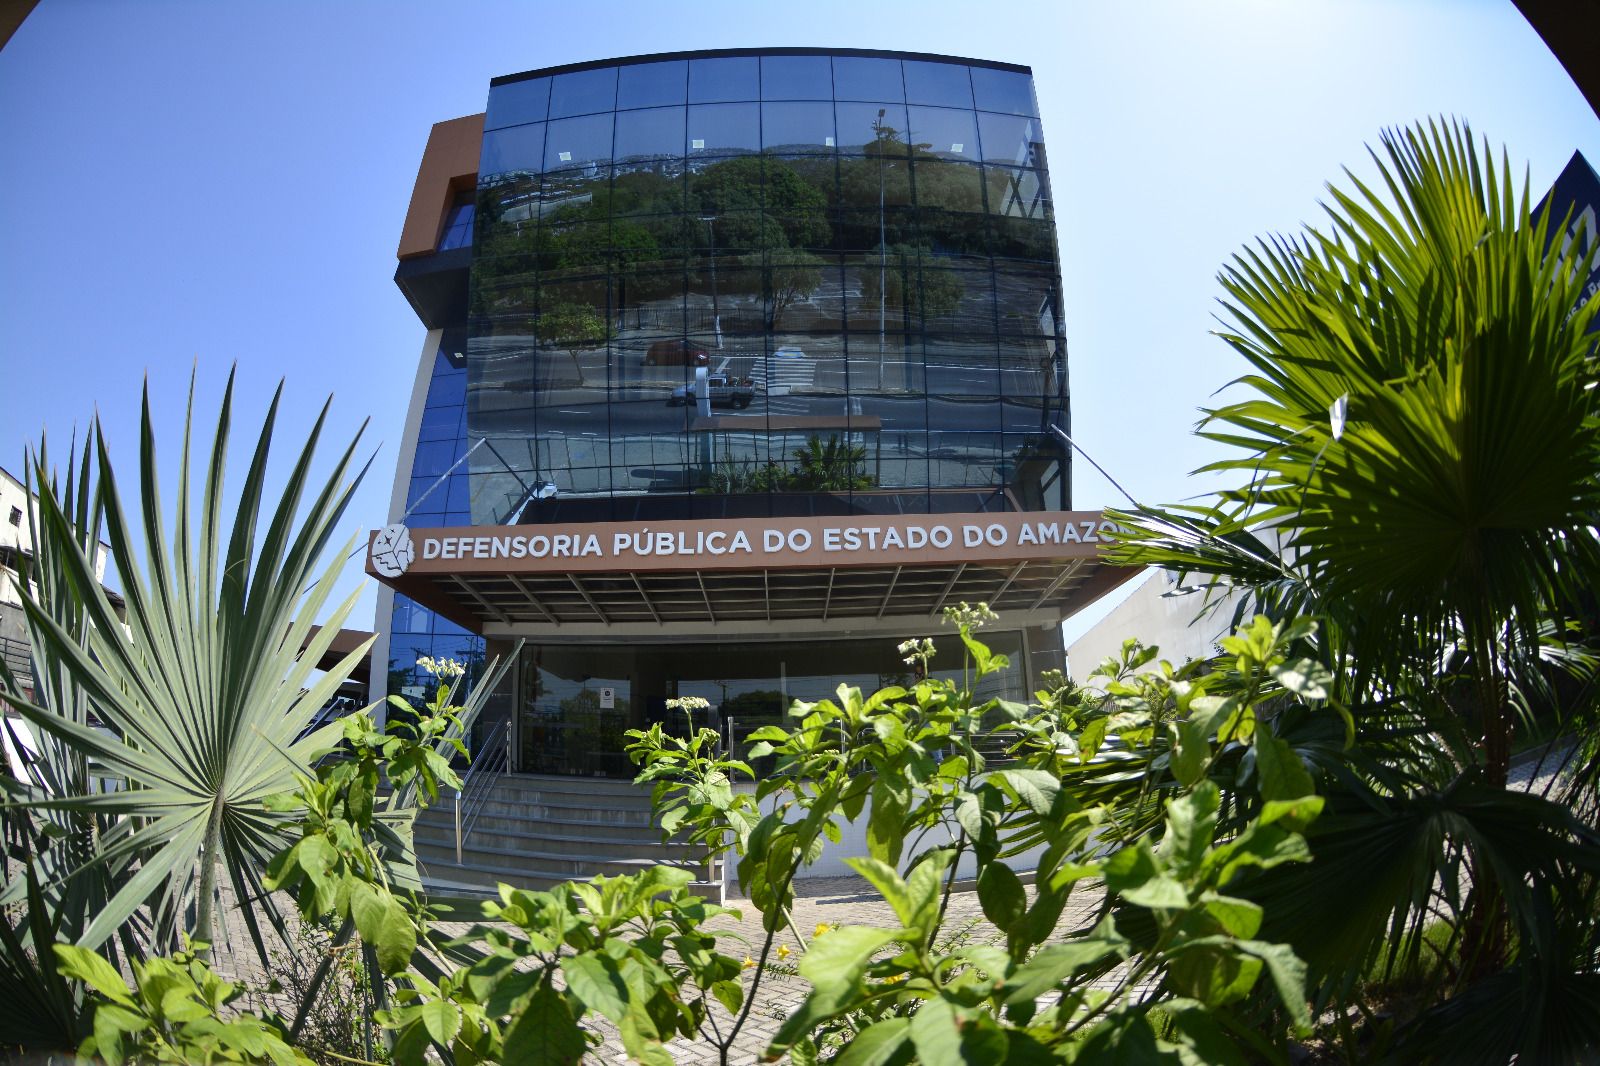 Edital prevê duas vagas para ensino superior (Manaus e Humaitá) e uma vaga para ensino médio (Manaus)